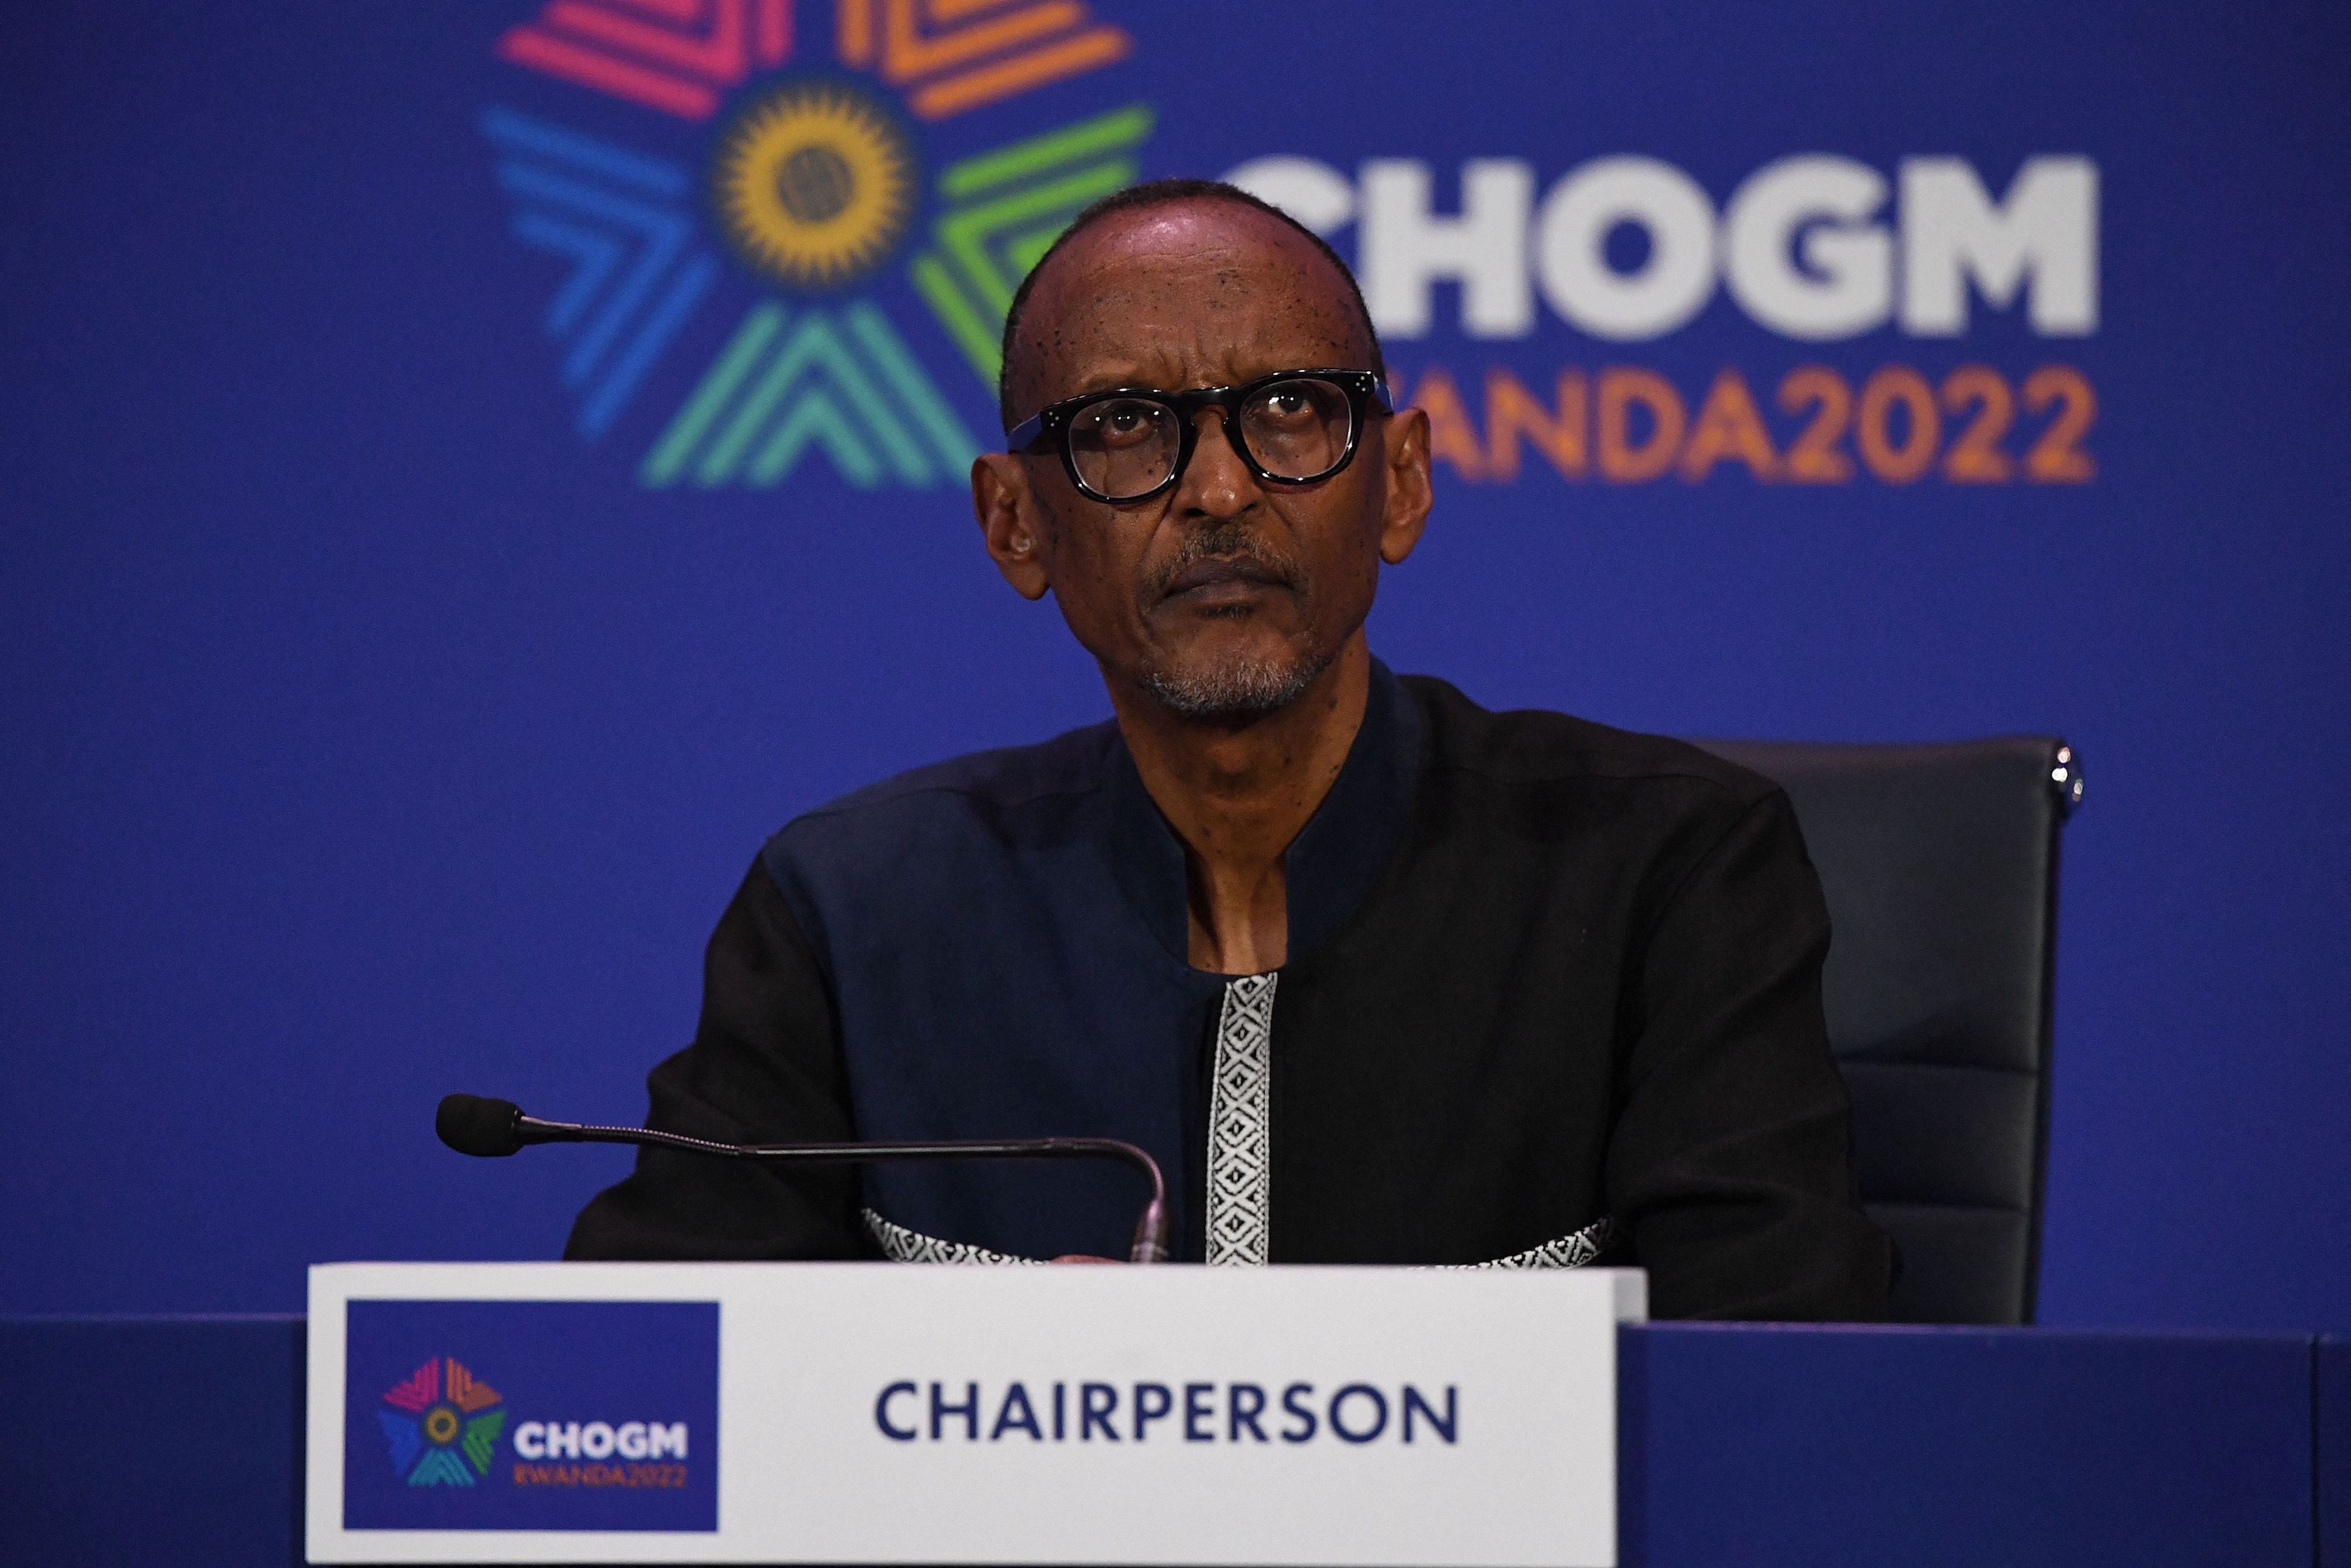 Le président du Rwanda, Paul Kagame, écoute les questions des journalistes à la fin de la réunion des chefs de gouvernement du Commonwealth (CHOGM) à Kigali, au Rwanda, le 25 juin 2022.